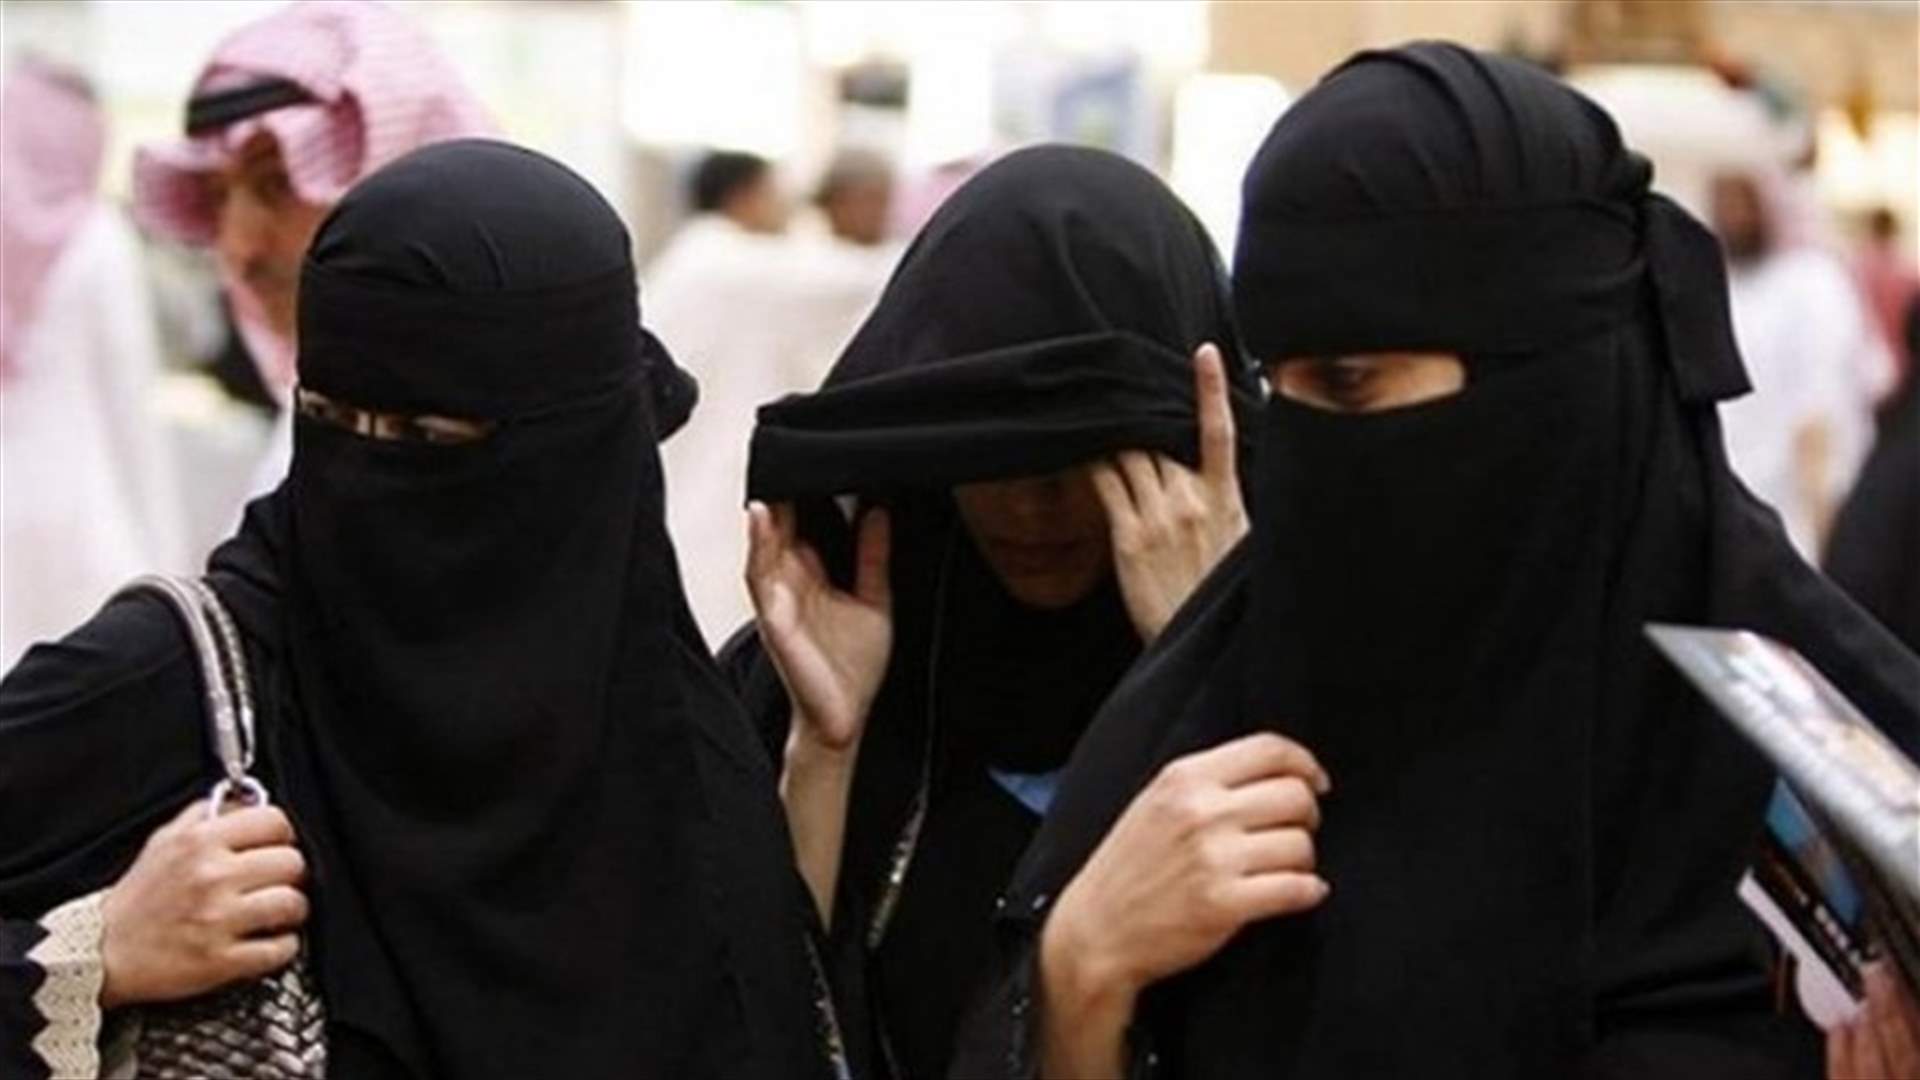 في الكويت... فتيات يتحرشن برجل أمام زوجته فكانت النهاية مأساوية